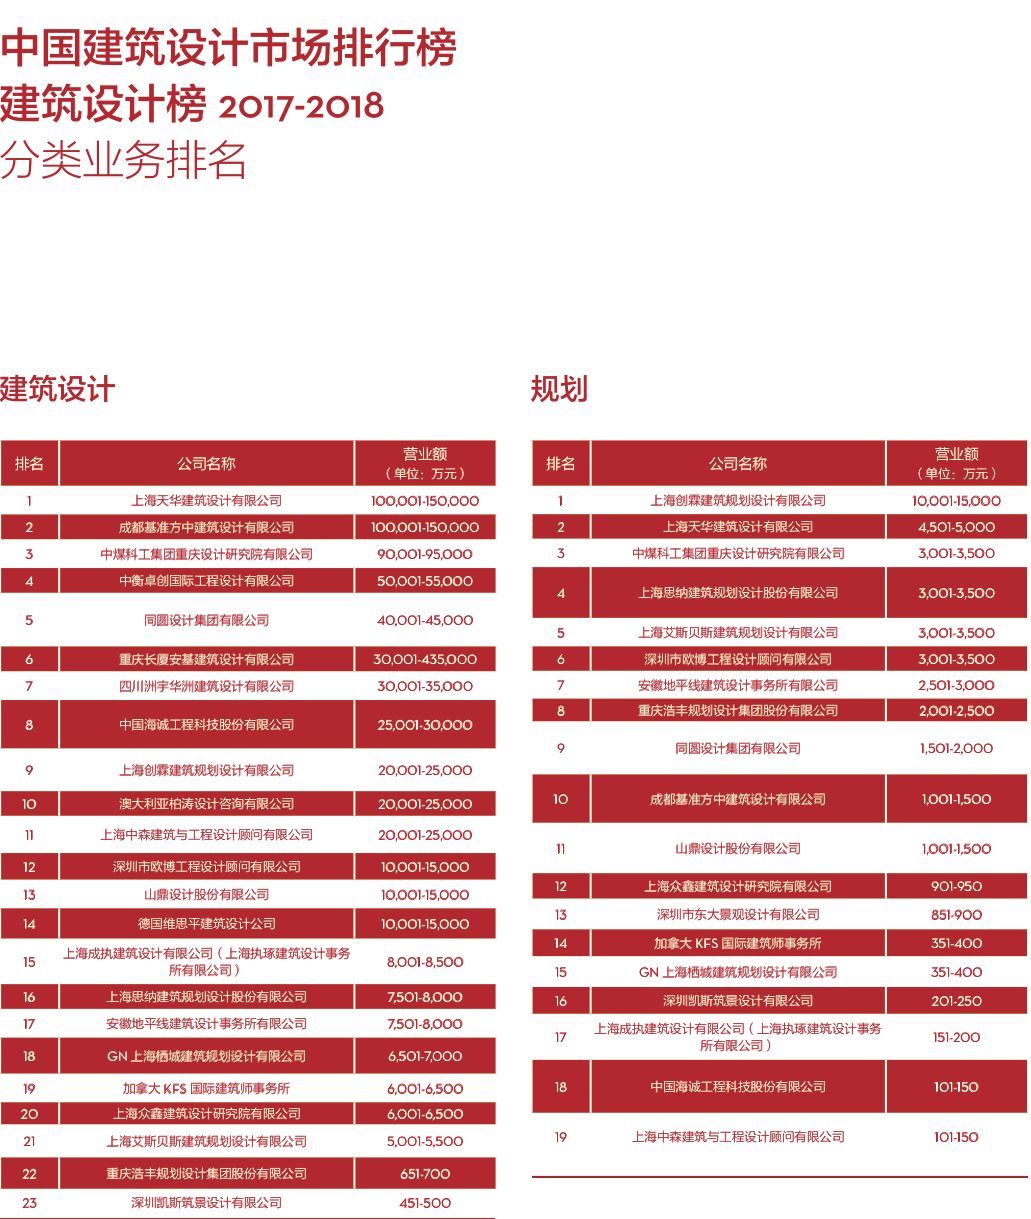 2017-2018 di 中国民用建筑设计市场排名